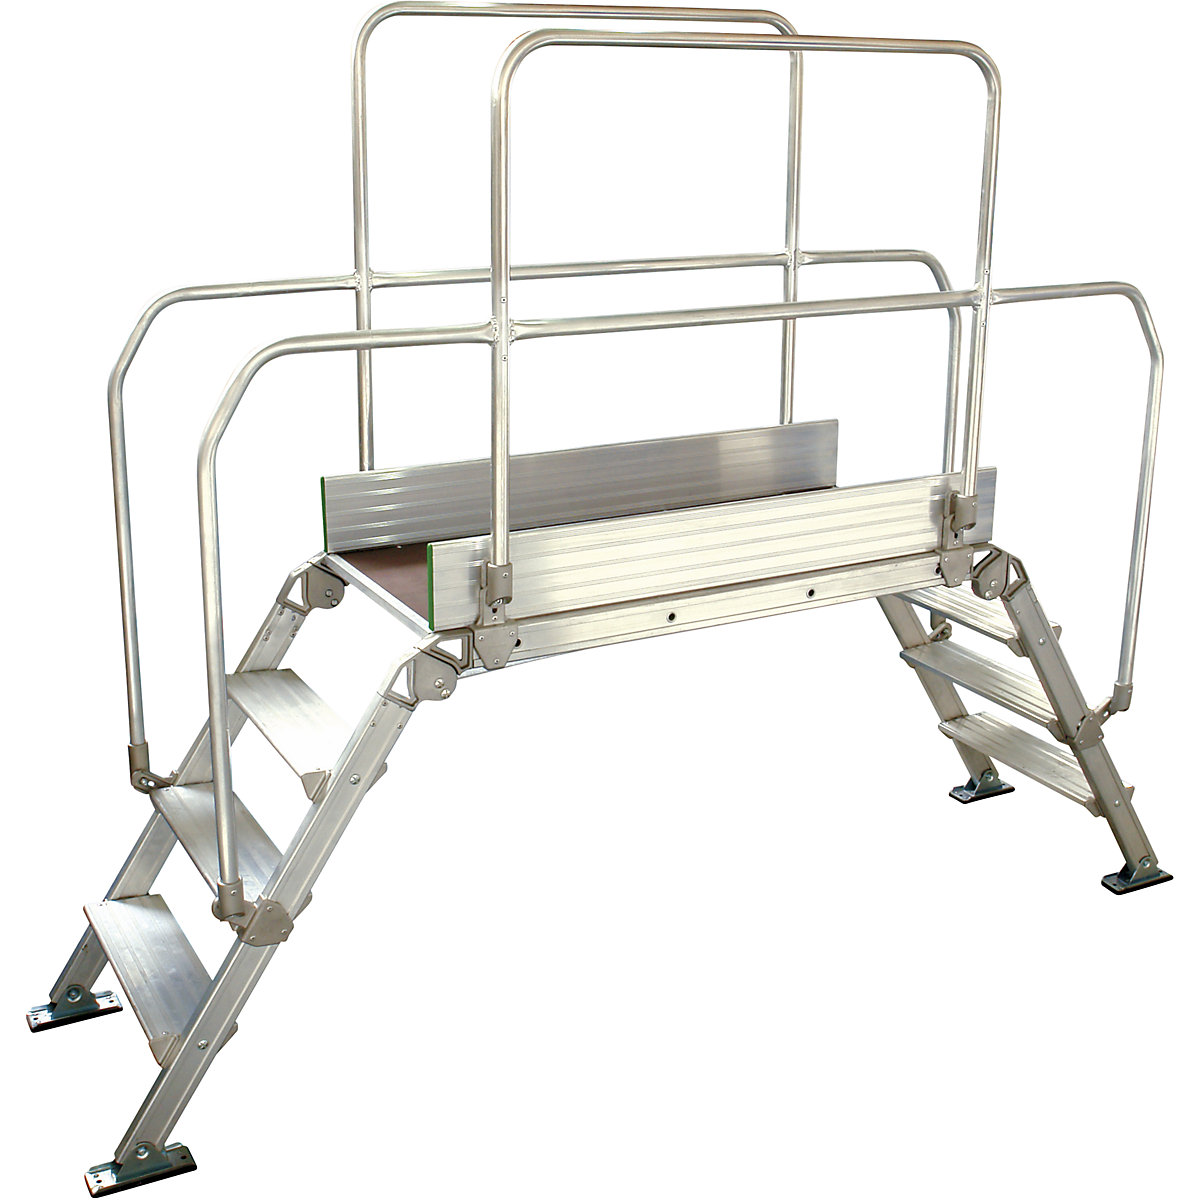 Aluminijasta premostitvena lestev, skupna obremenitev 200 kg, 4 stopnice, podest 1200 x 530 mm